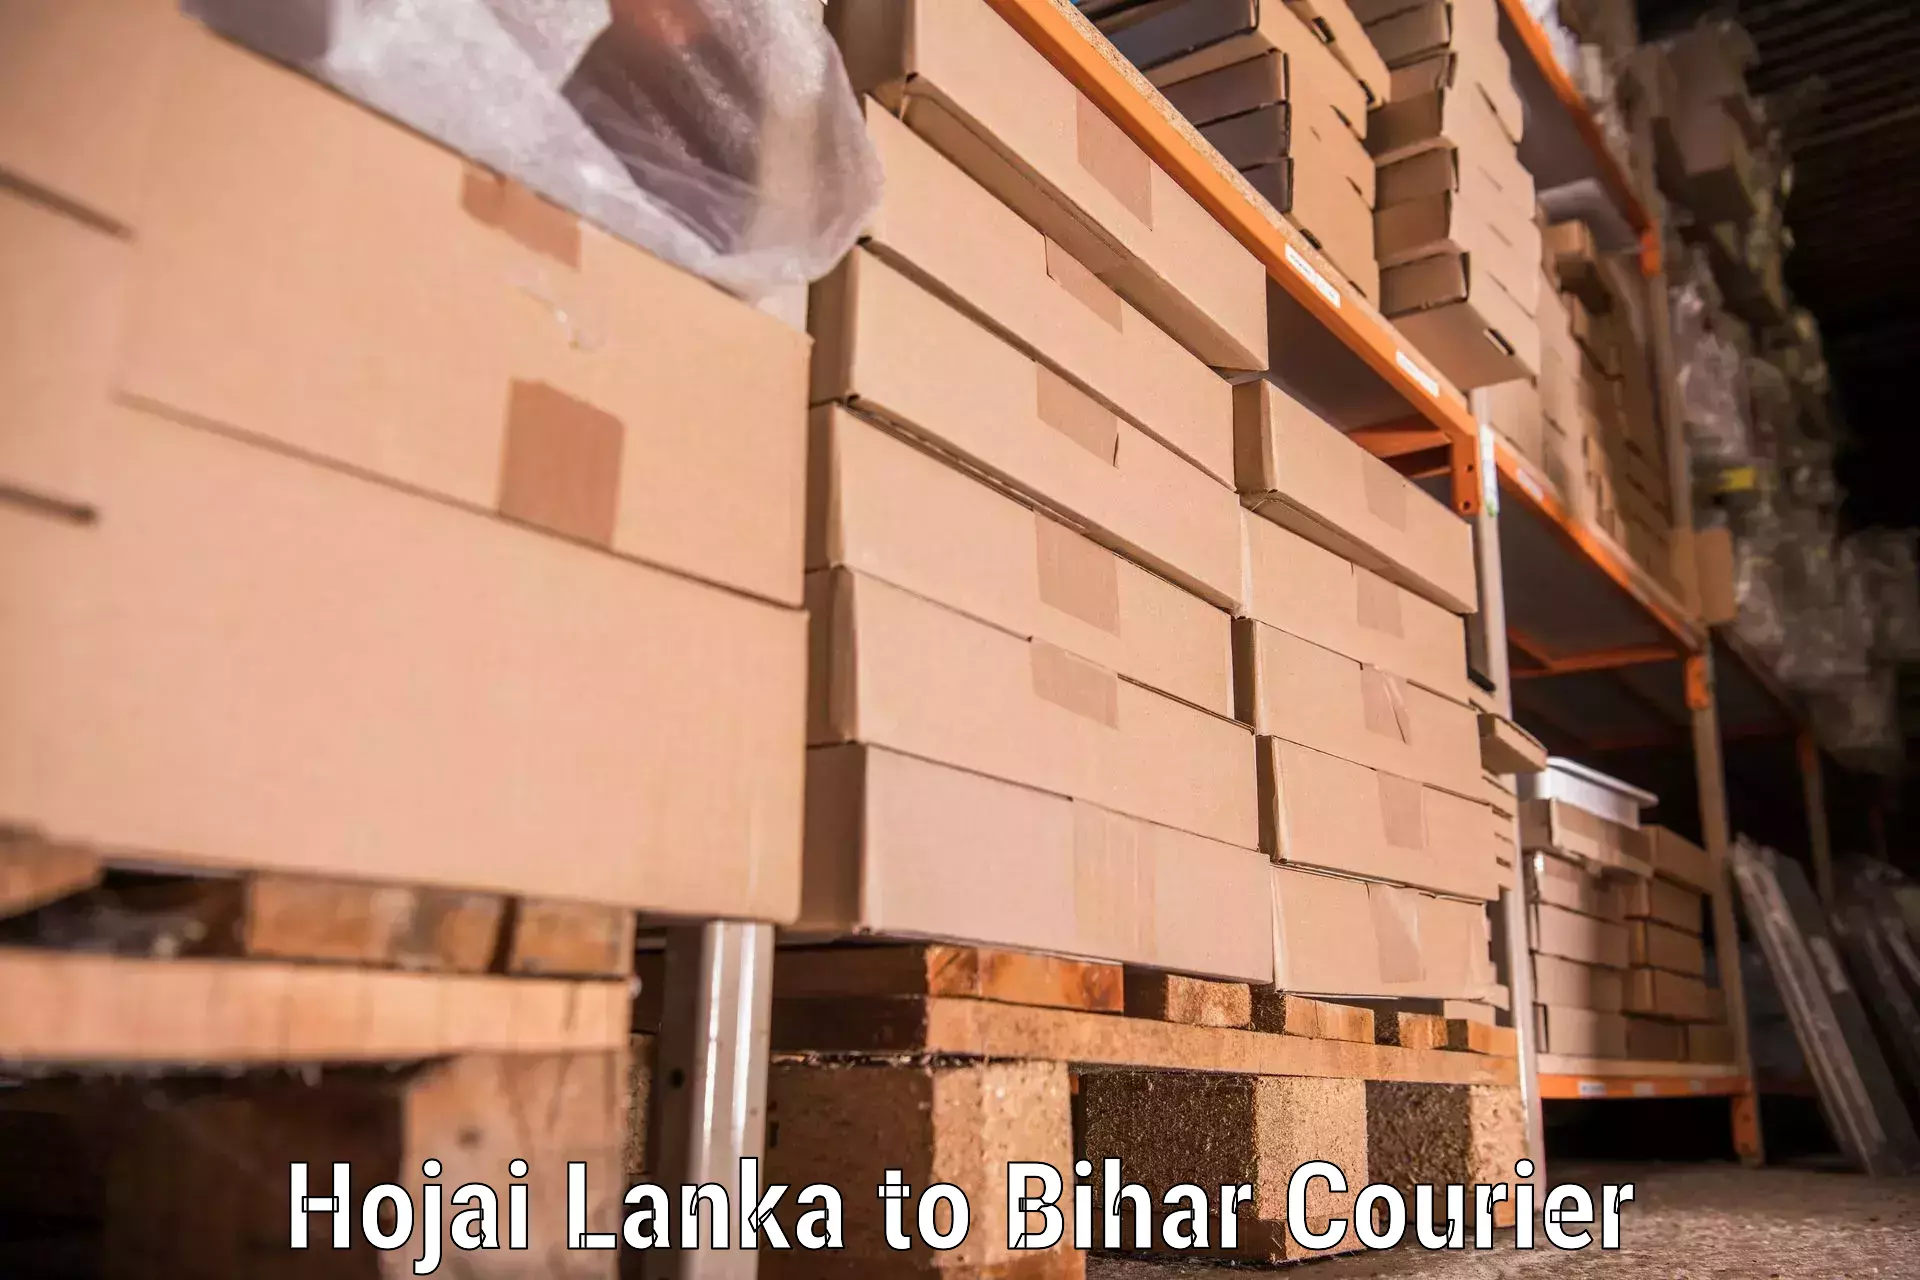 Trusted moving company Hojai Lanka to Bihar